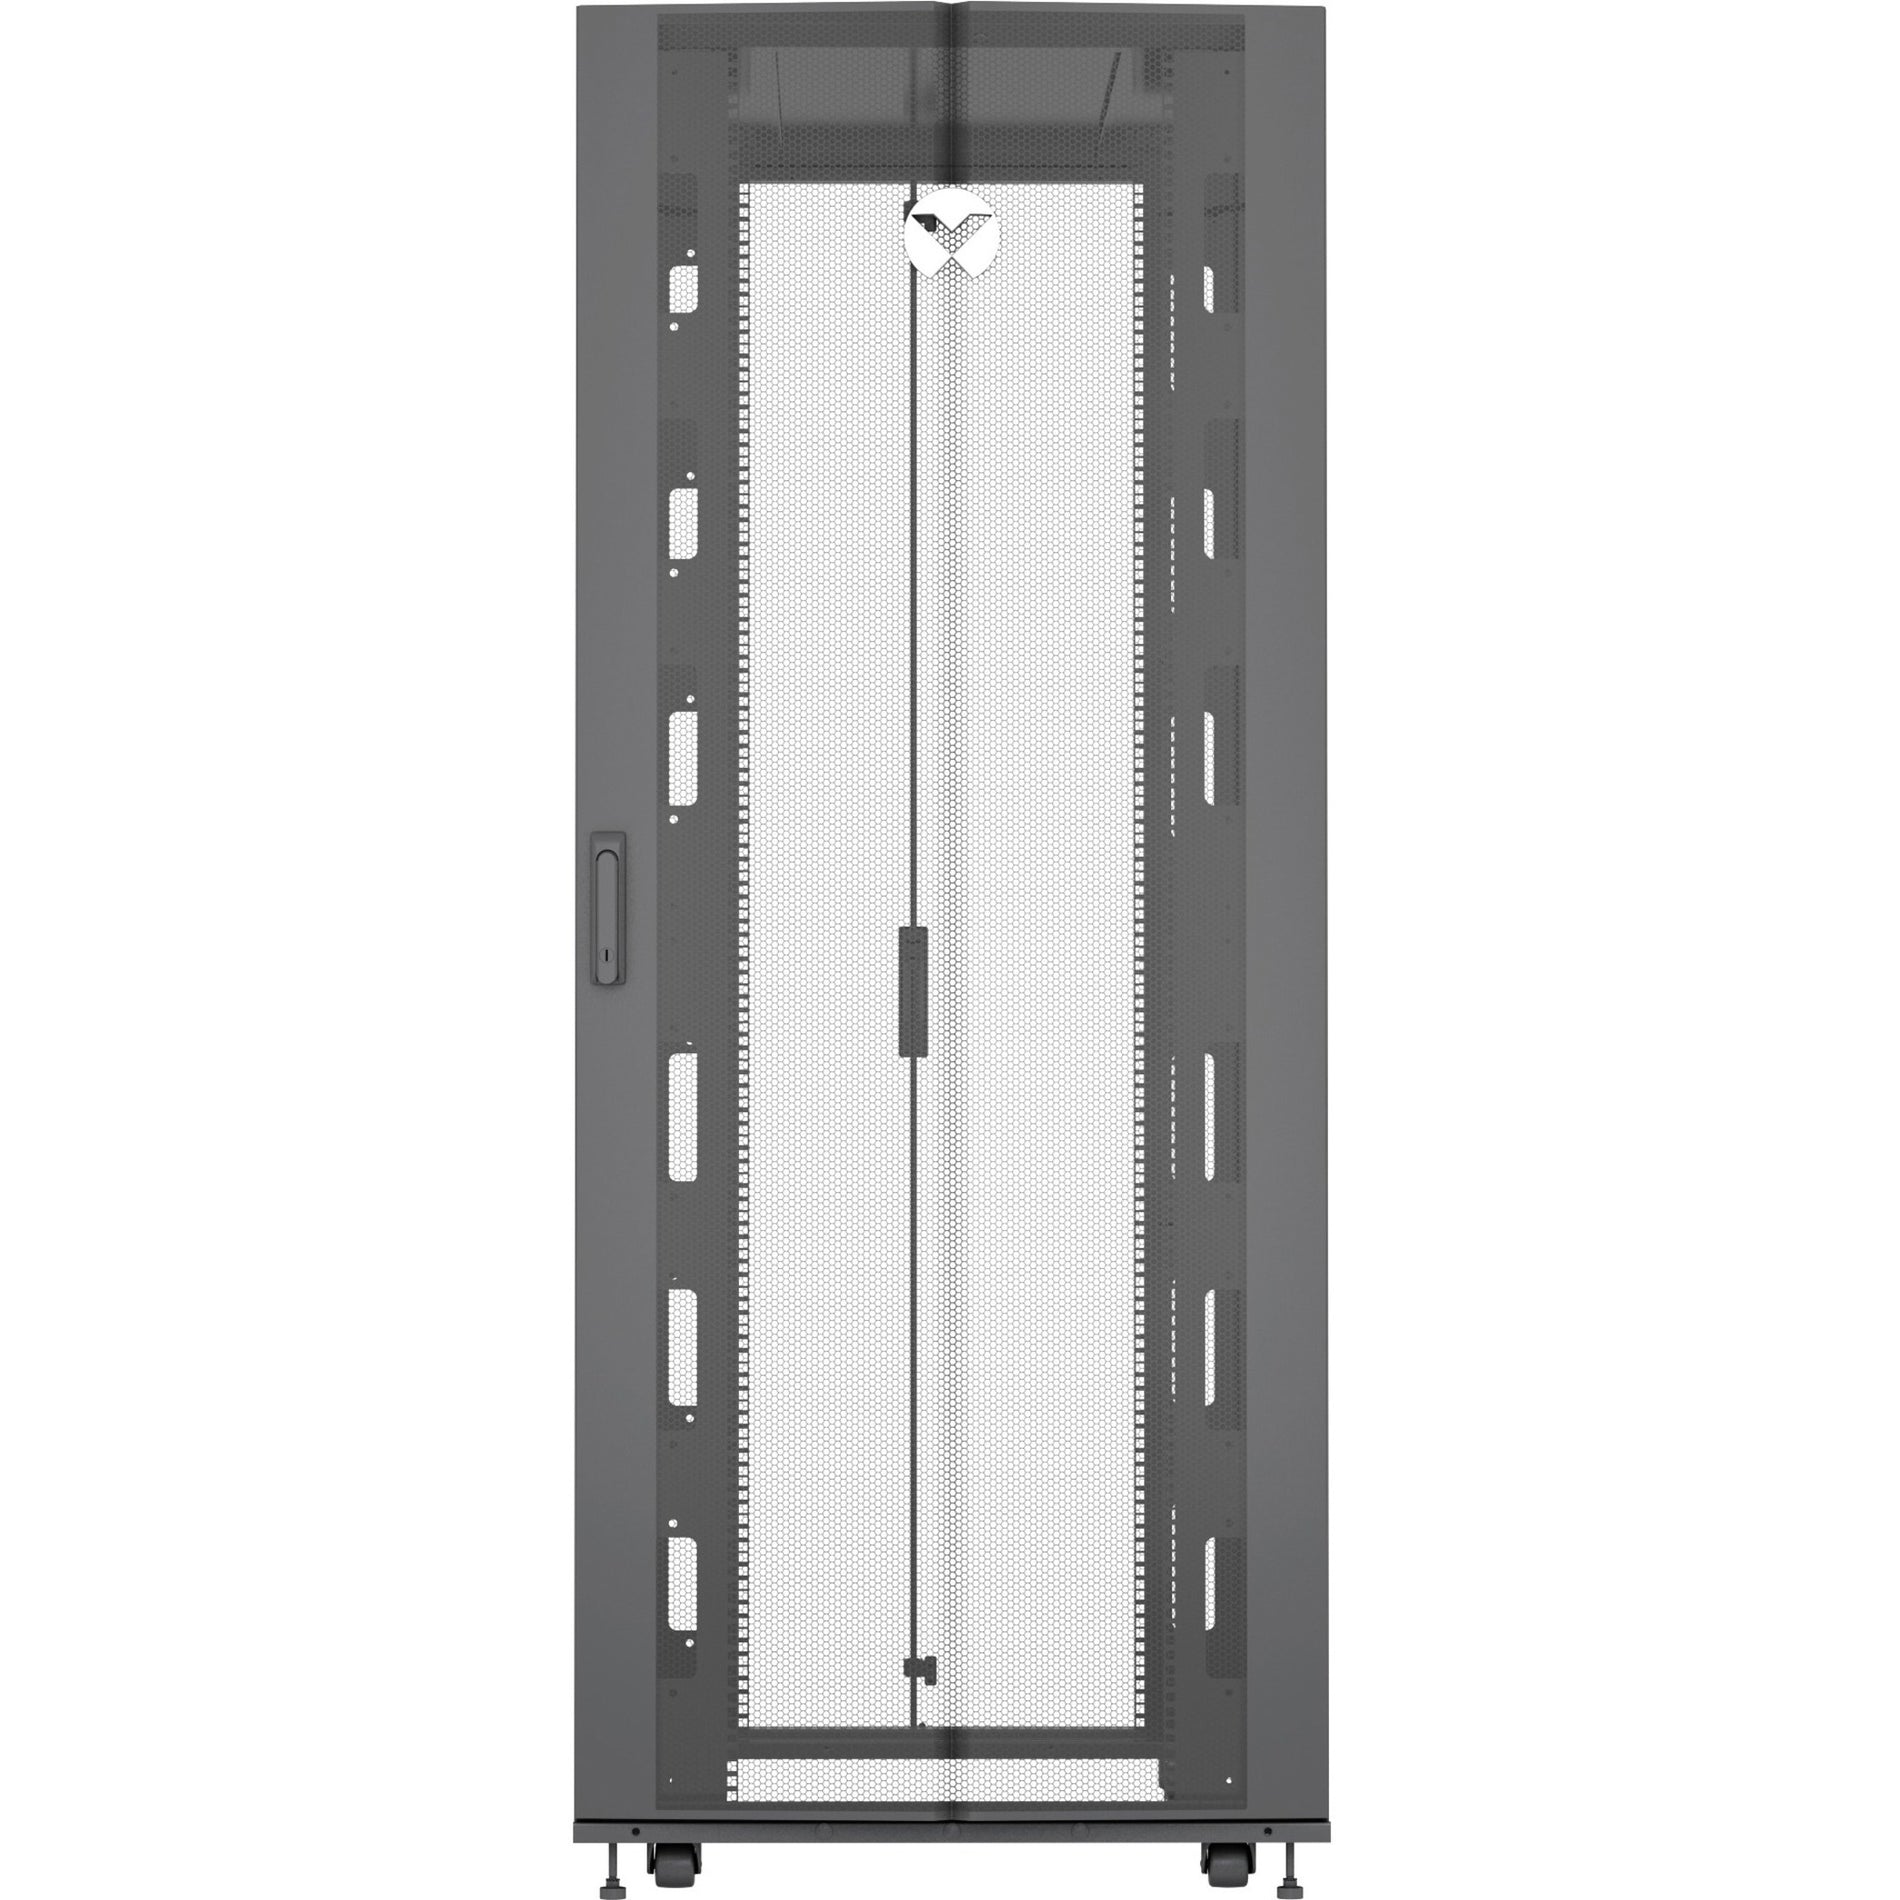 VERTIV VR3107 Vertiv VR Rack - 48U Server Rack Enclosure 600x1100mm 19-inch Cabinet